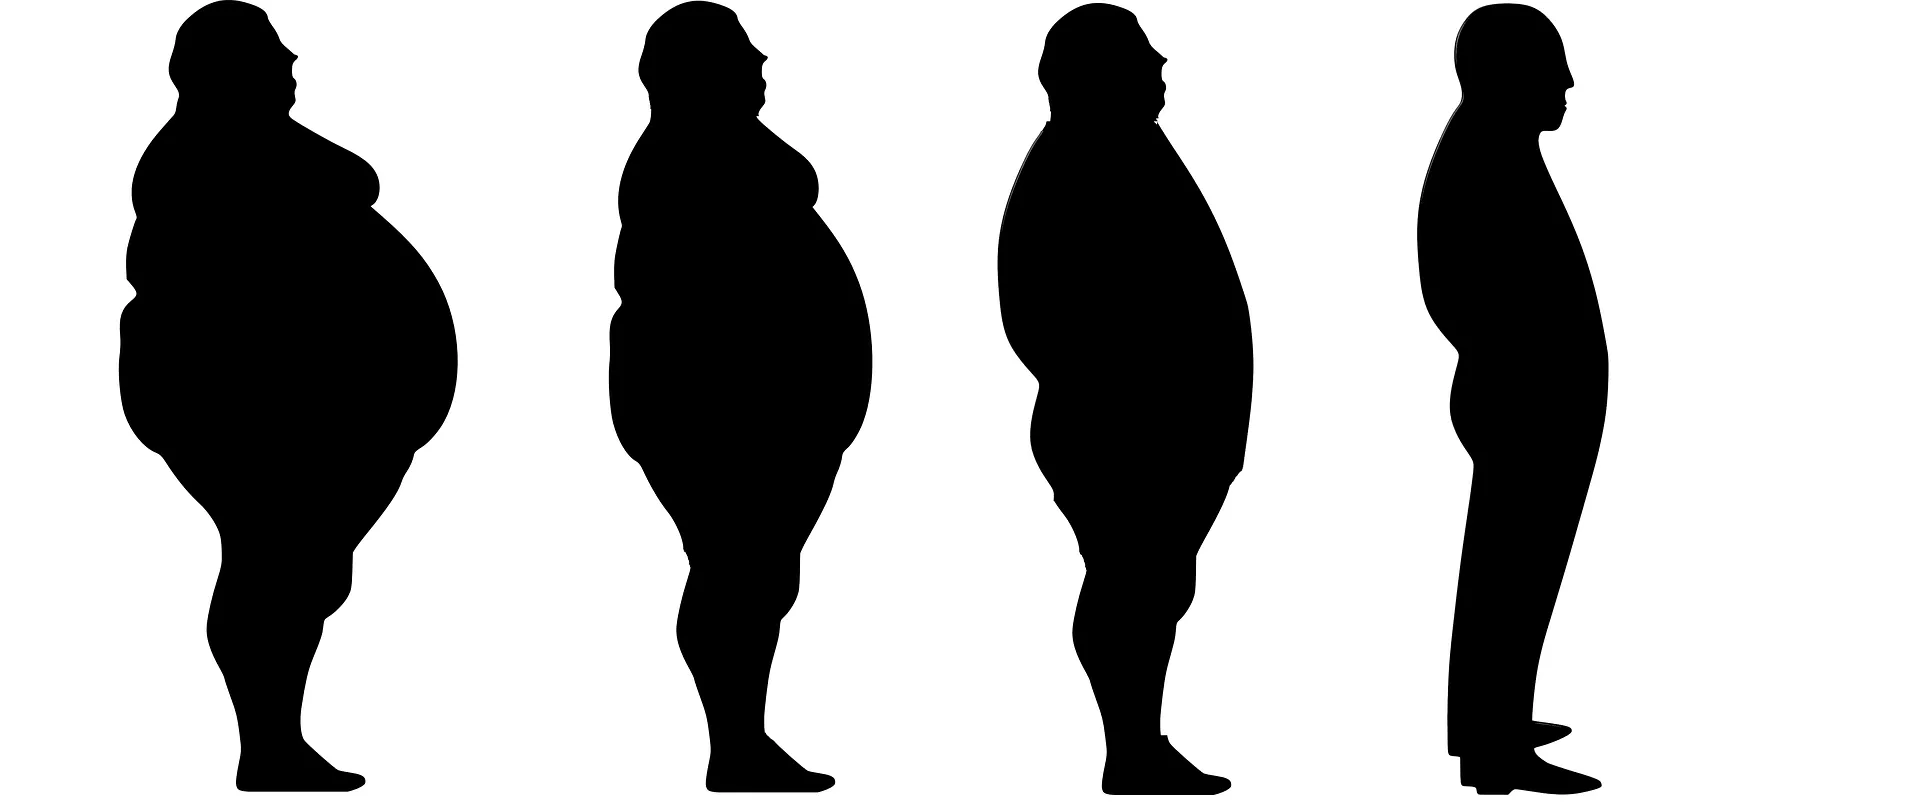 MZ opublikowało rozporządzenie w sprawie leczenia otyłości olbrzymiej KOS-BAR